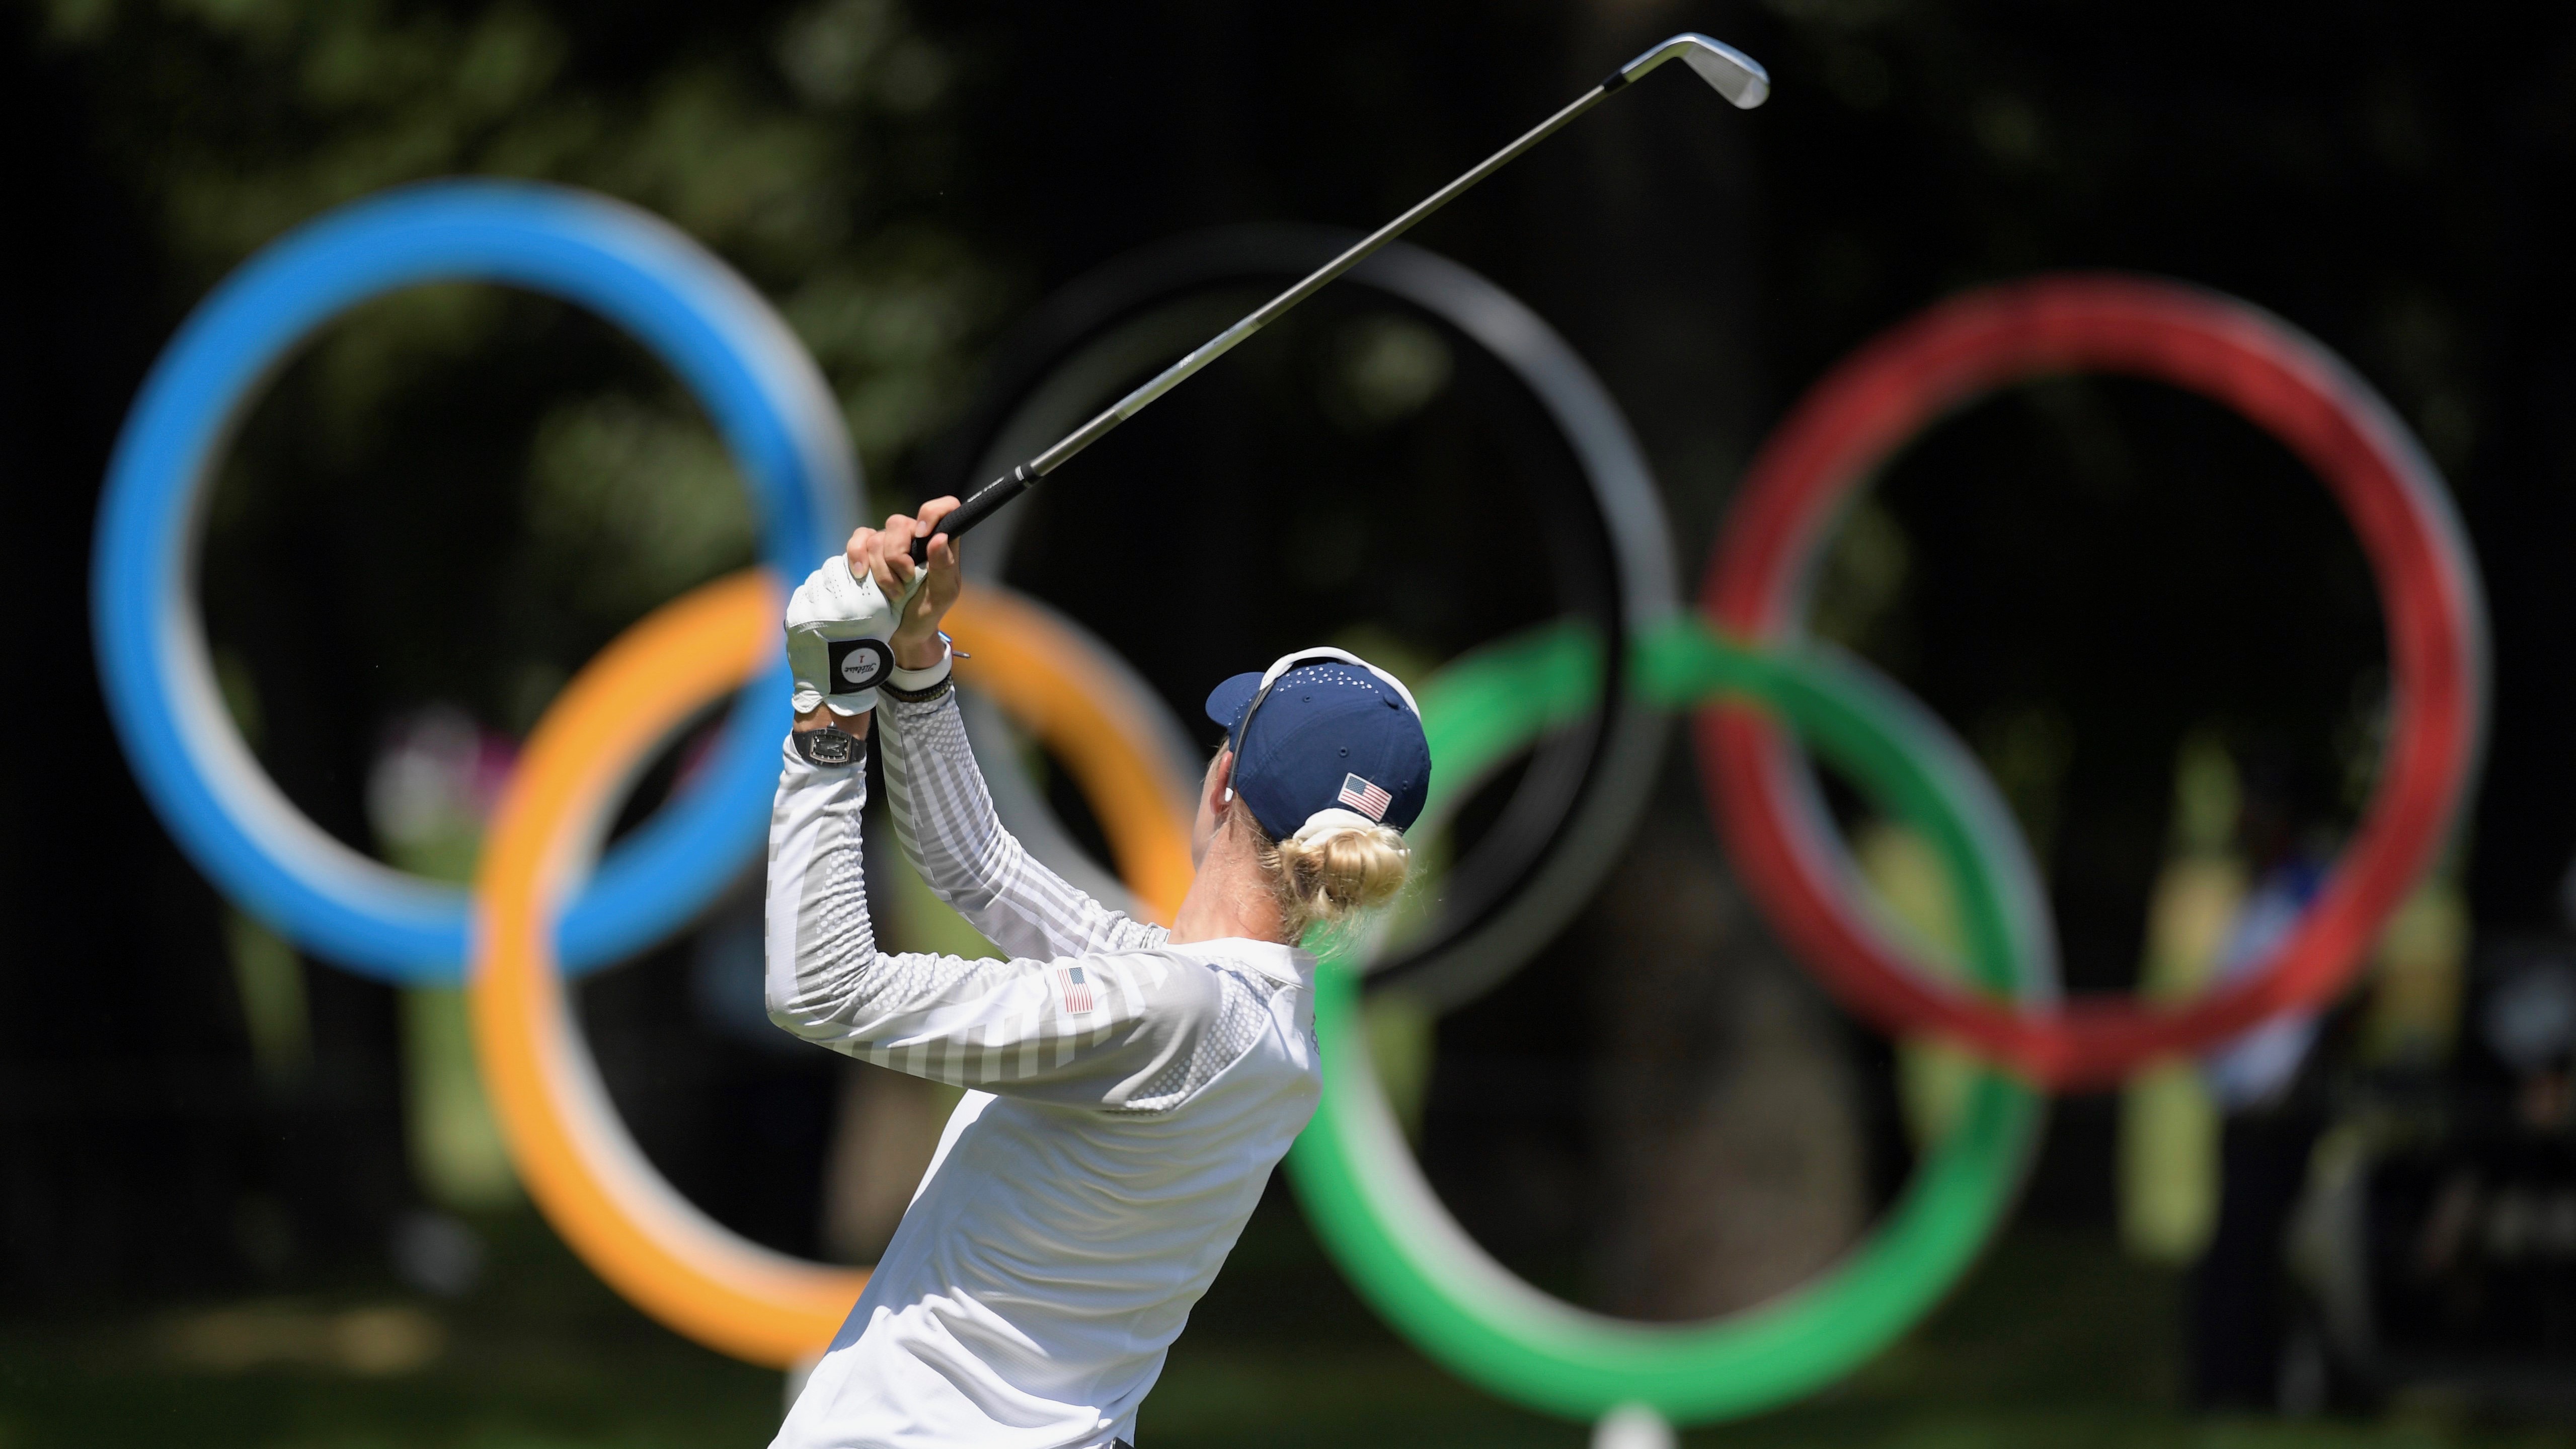 Wie geht es weiter? Golf hat gute Aussichten, auch nach den Sommerspielen 2024 in Paris ein Teil des olympischen Programms zu bleiben. 